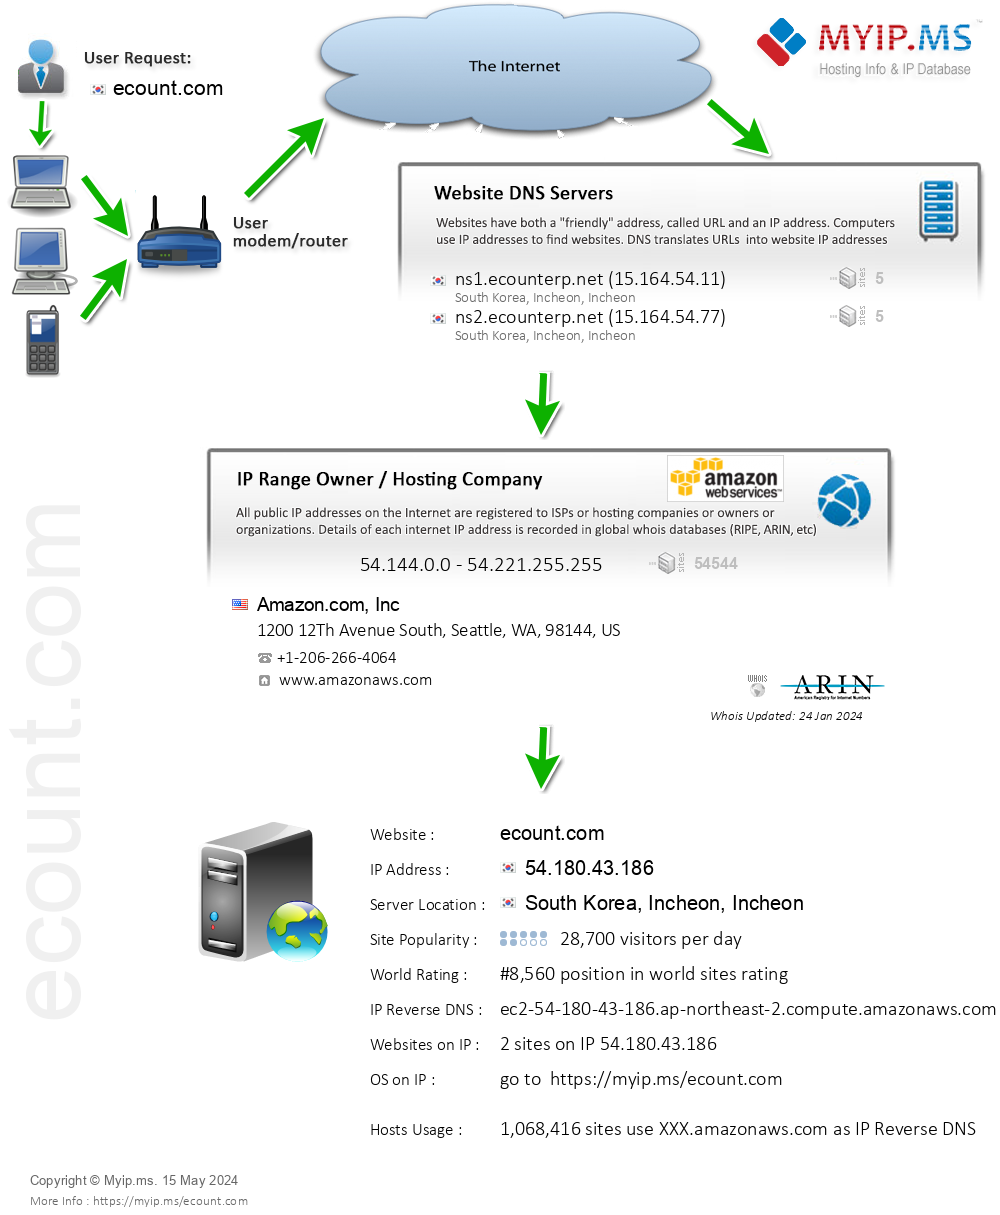 Ecount.com - Website Hosting Visual IP Diagram